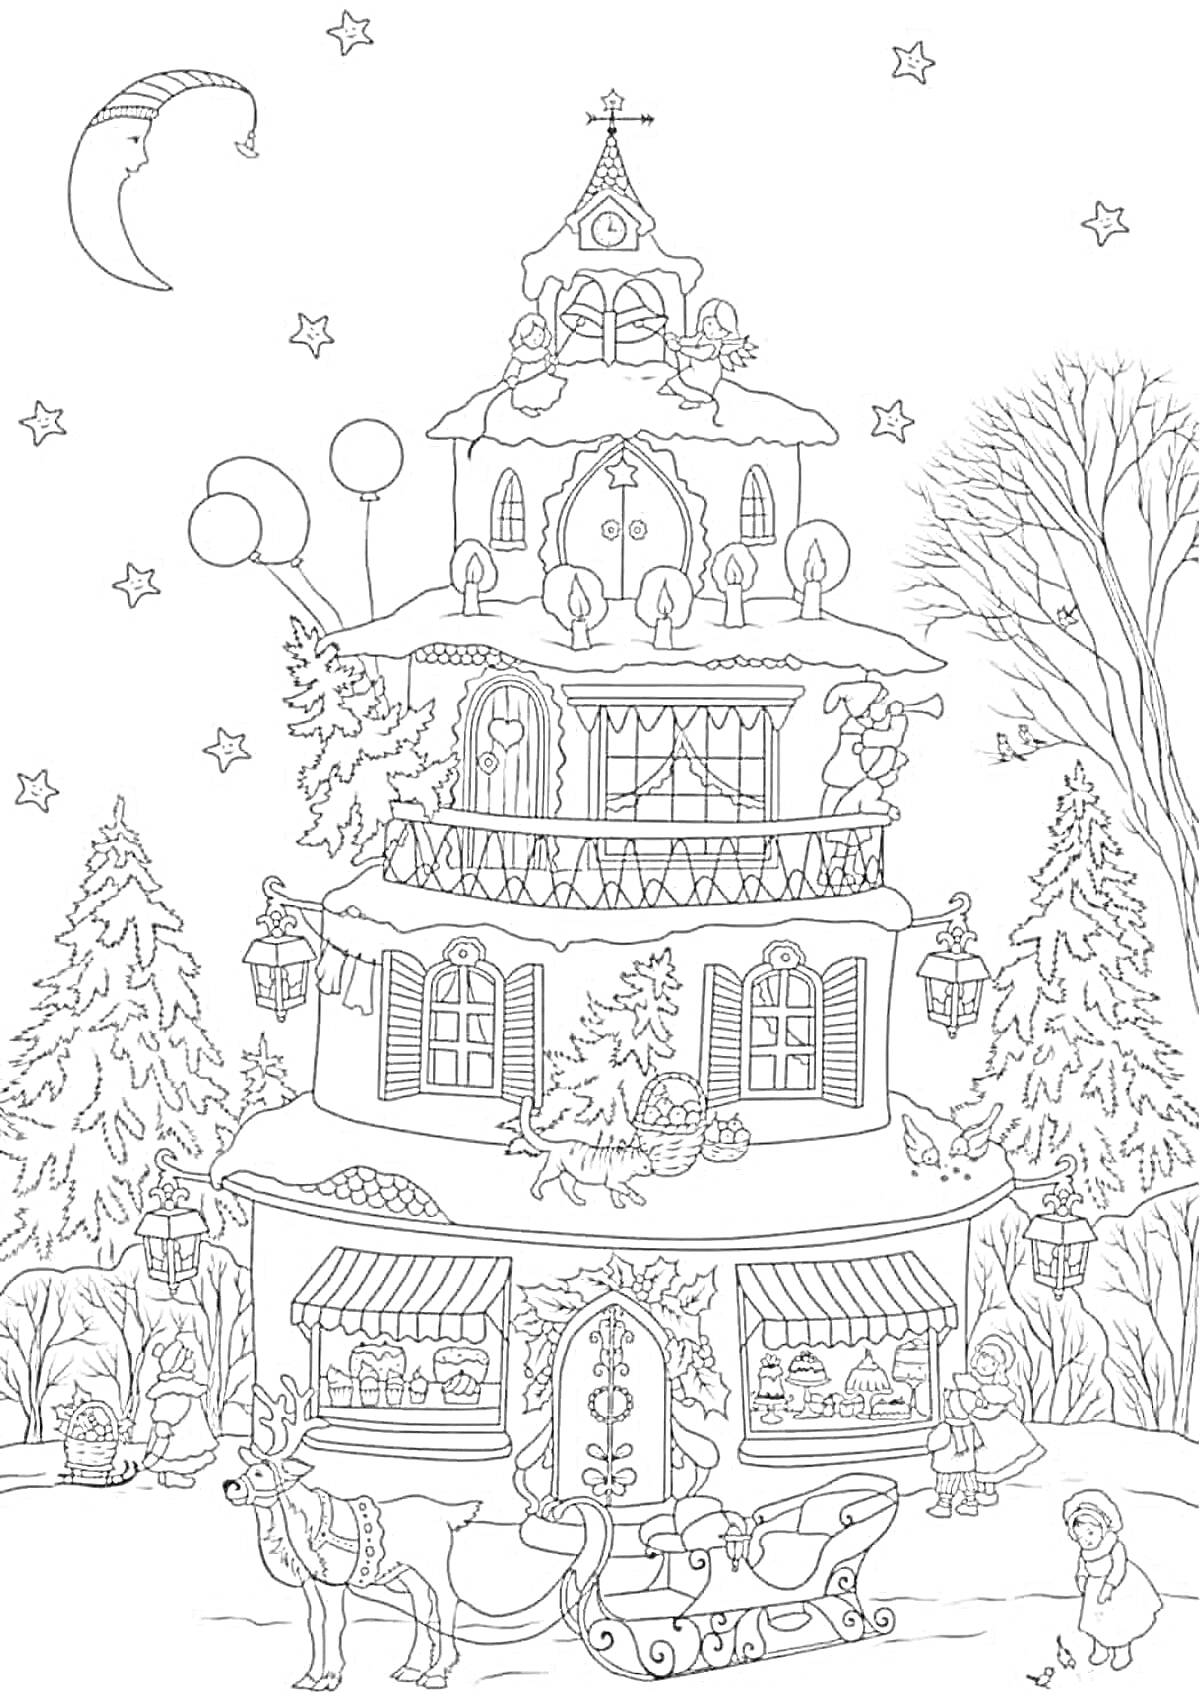 Раскраска Новогодний город с украшенным домом, елками, санями с оленем и новогодними декорациями, луна и звезды на небе